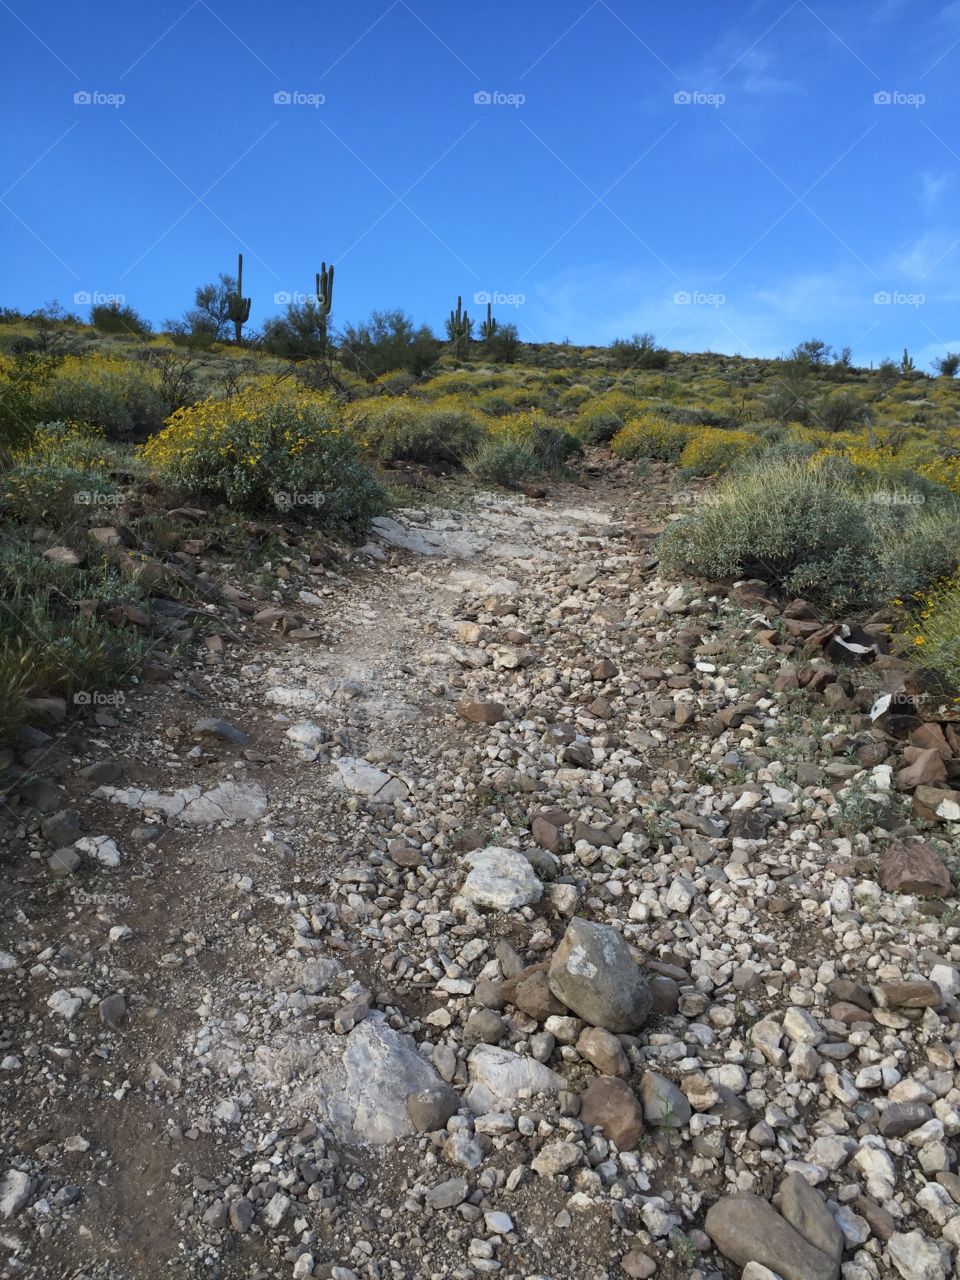 Rock trail in desert.